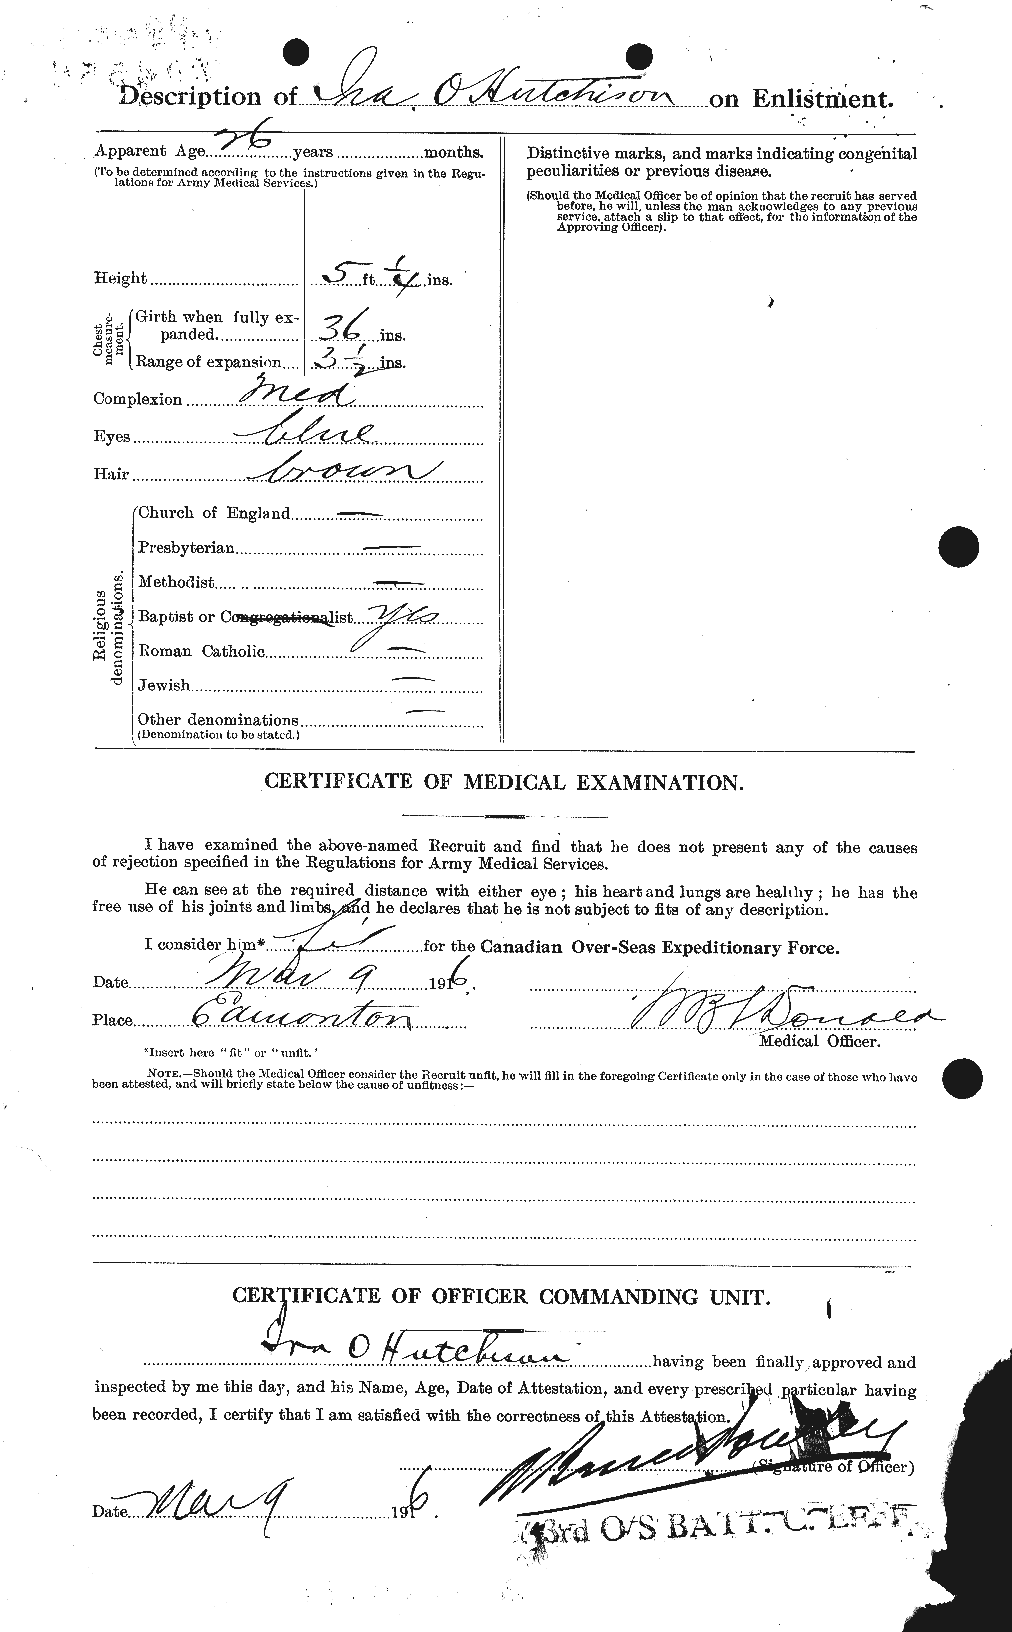 Dossiers du Personnel de la Première Guerre mondiale - CEC 410673b